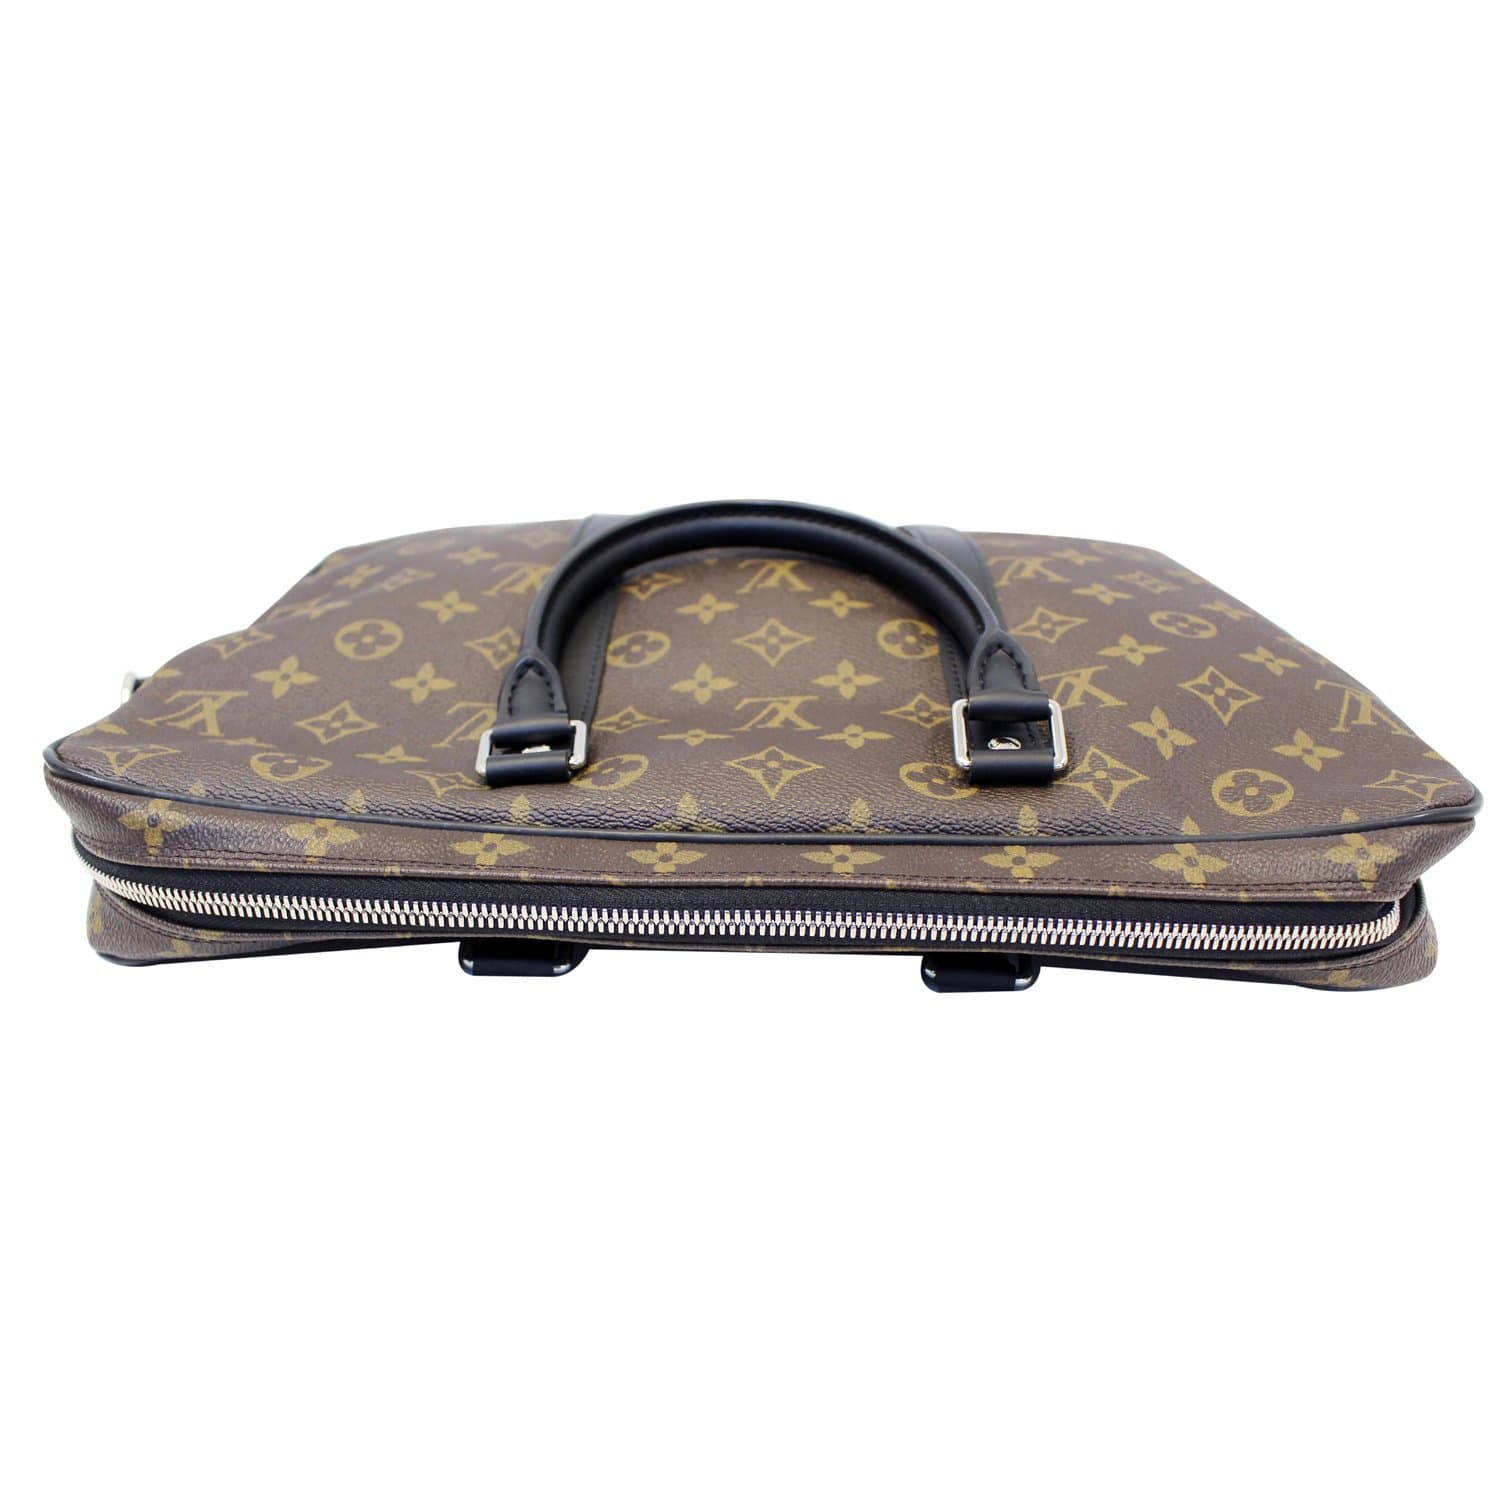 Authentic Louis Vuitton Monogram Business Bag Porte Documents M53338  Briefcase B